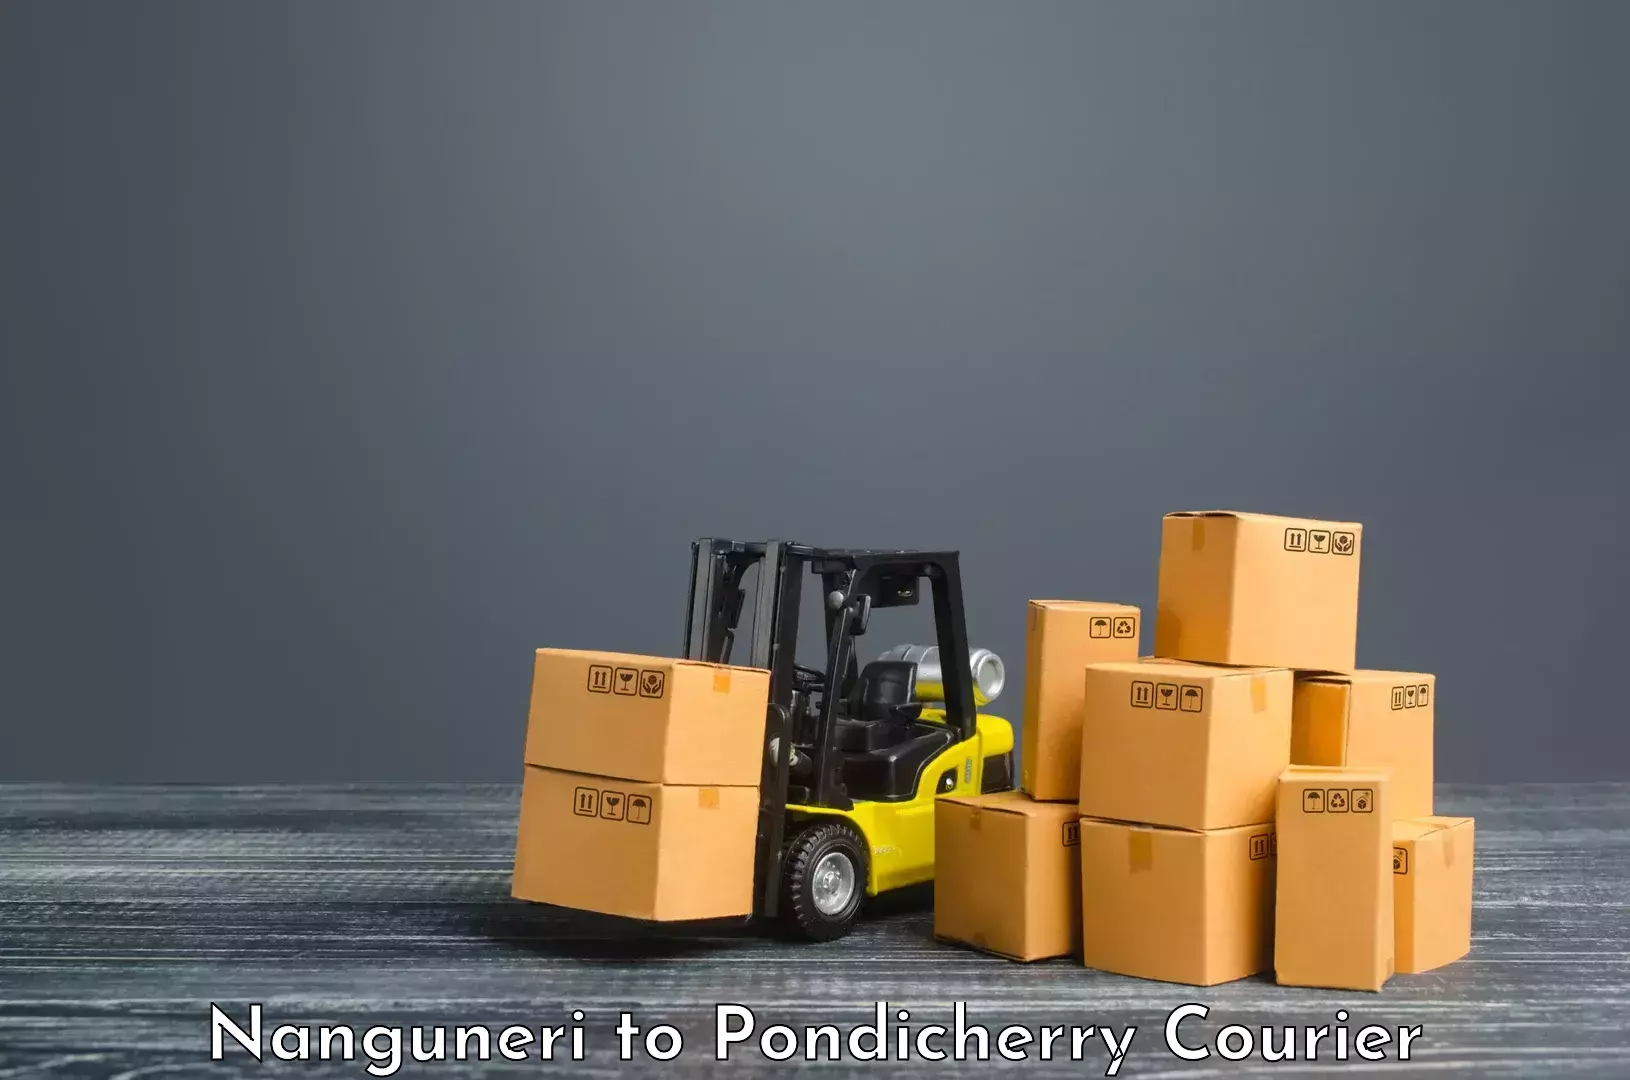 Urgent courier needs Nanguneri to Pondicherry